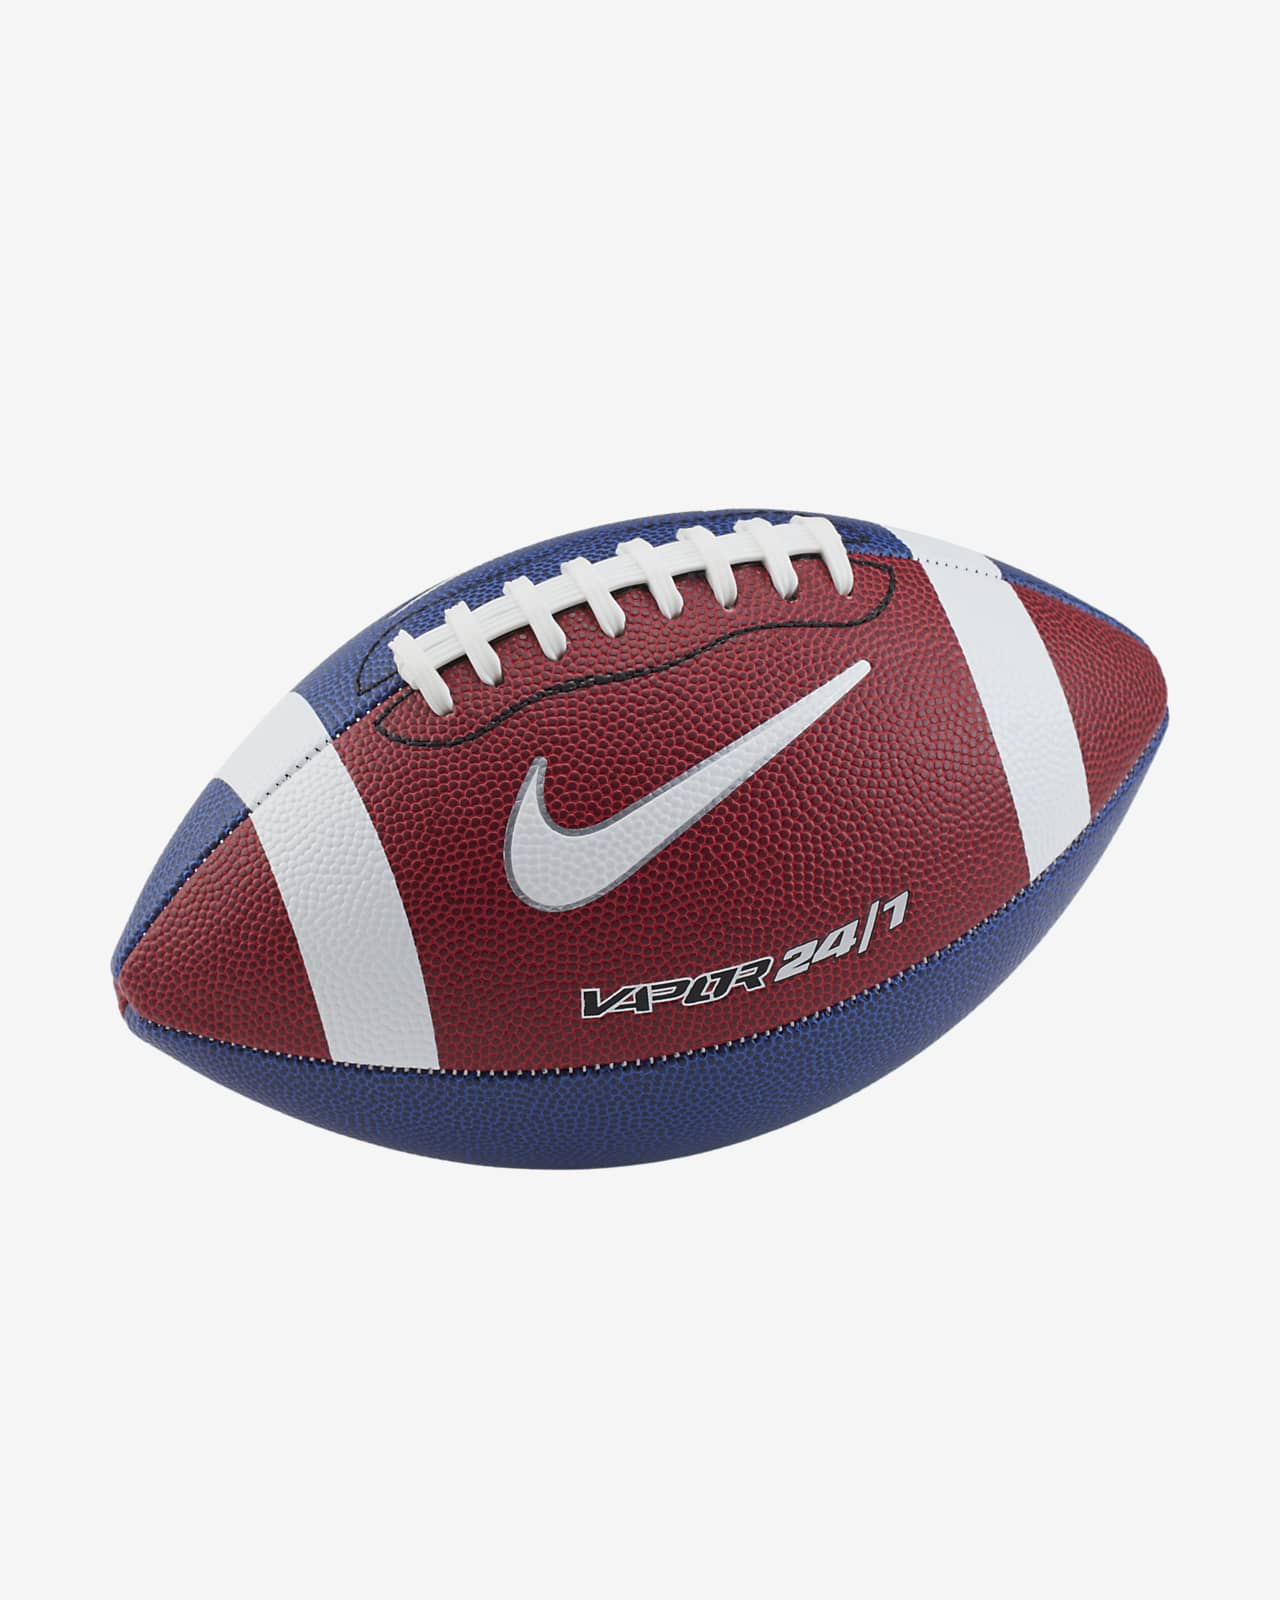 Balón de fútbol americano Nike Vapor 24/7 2.0